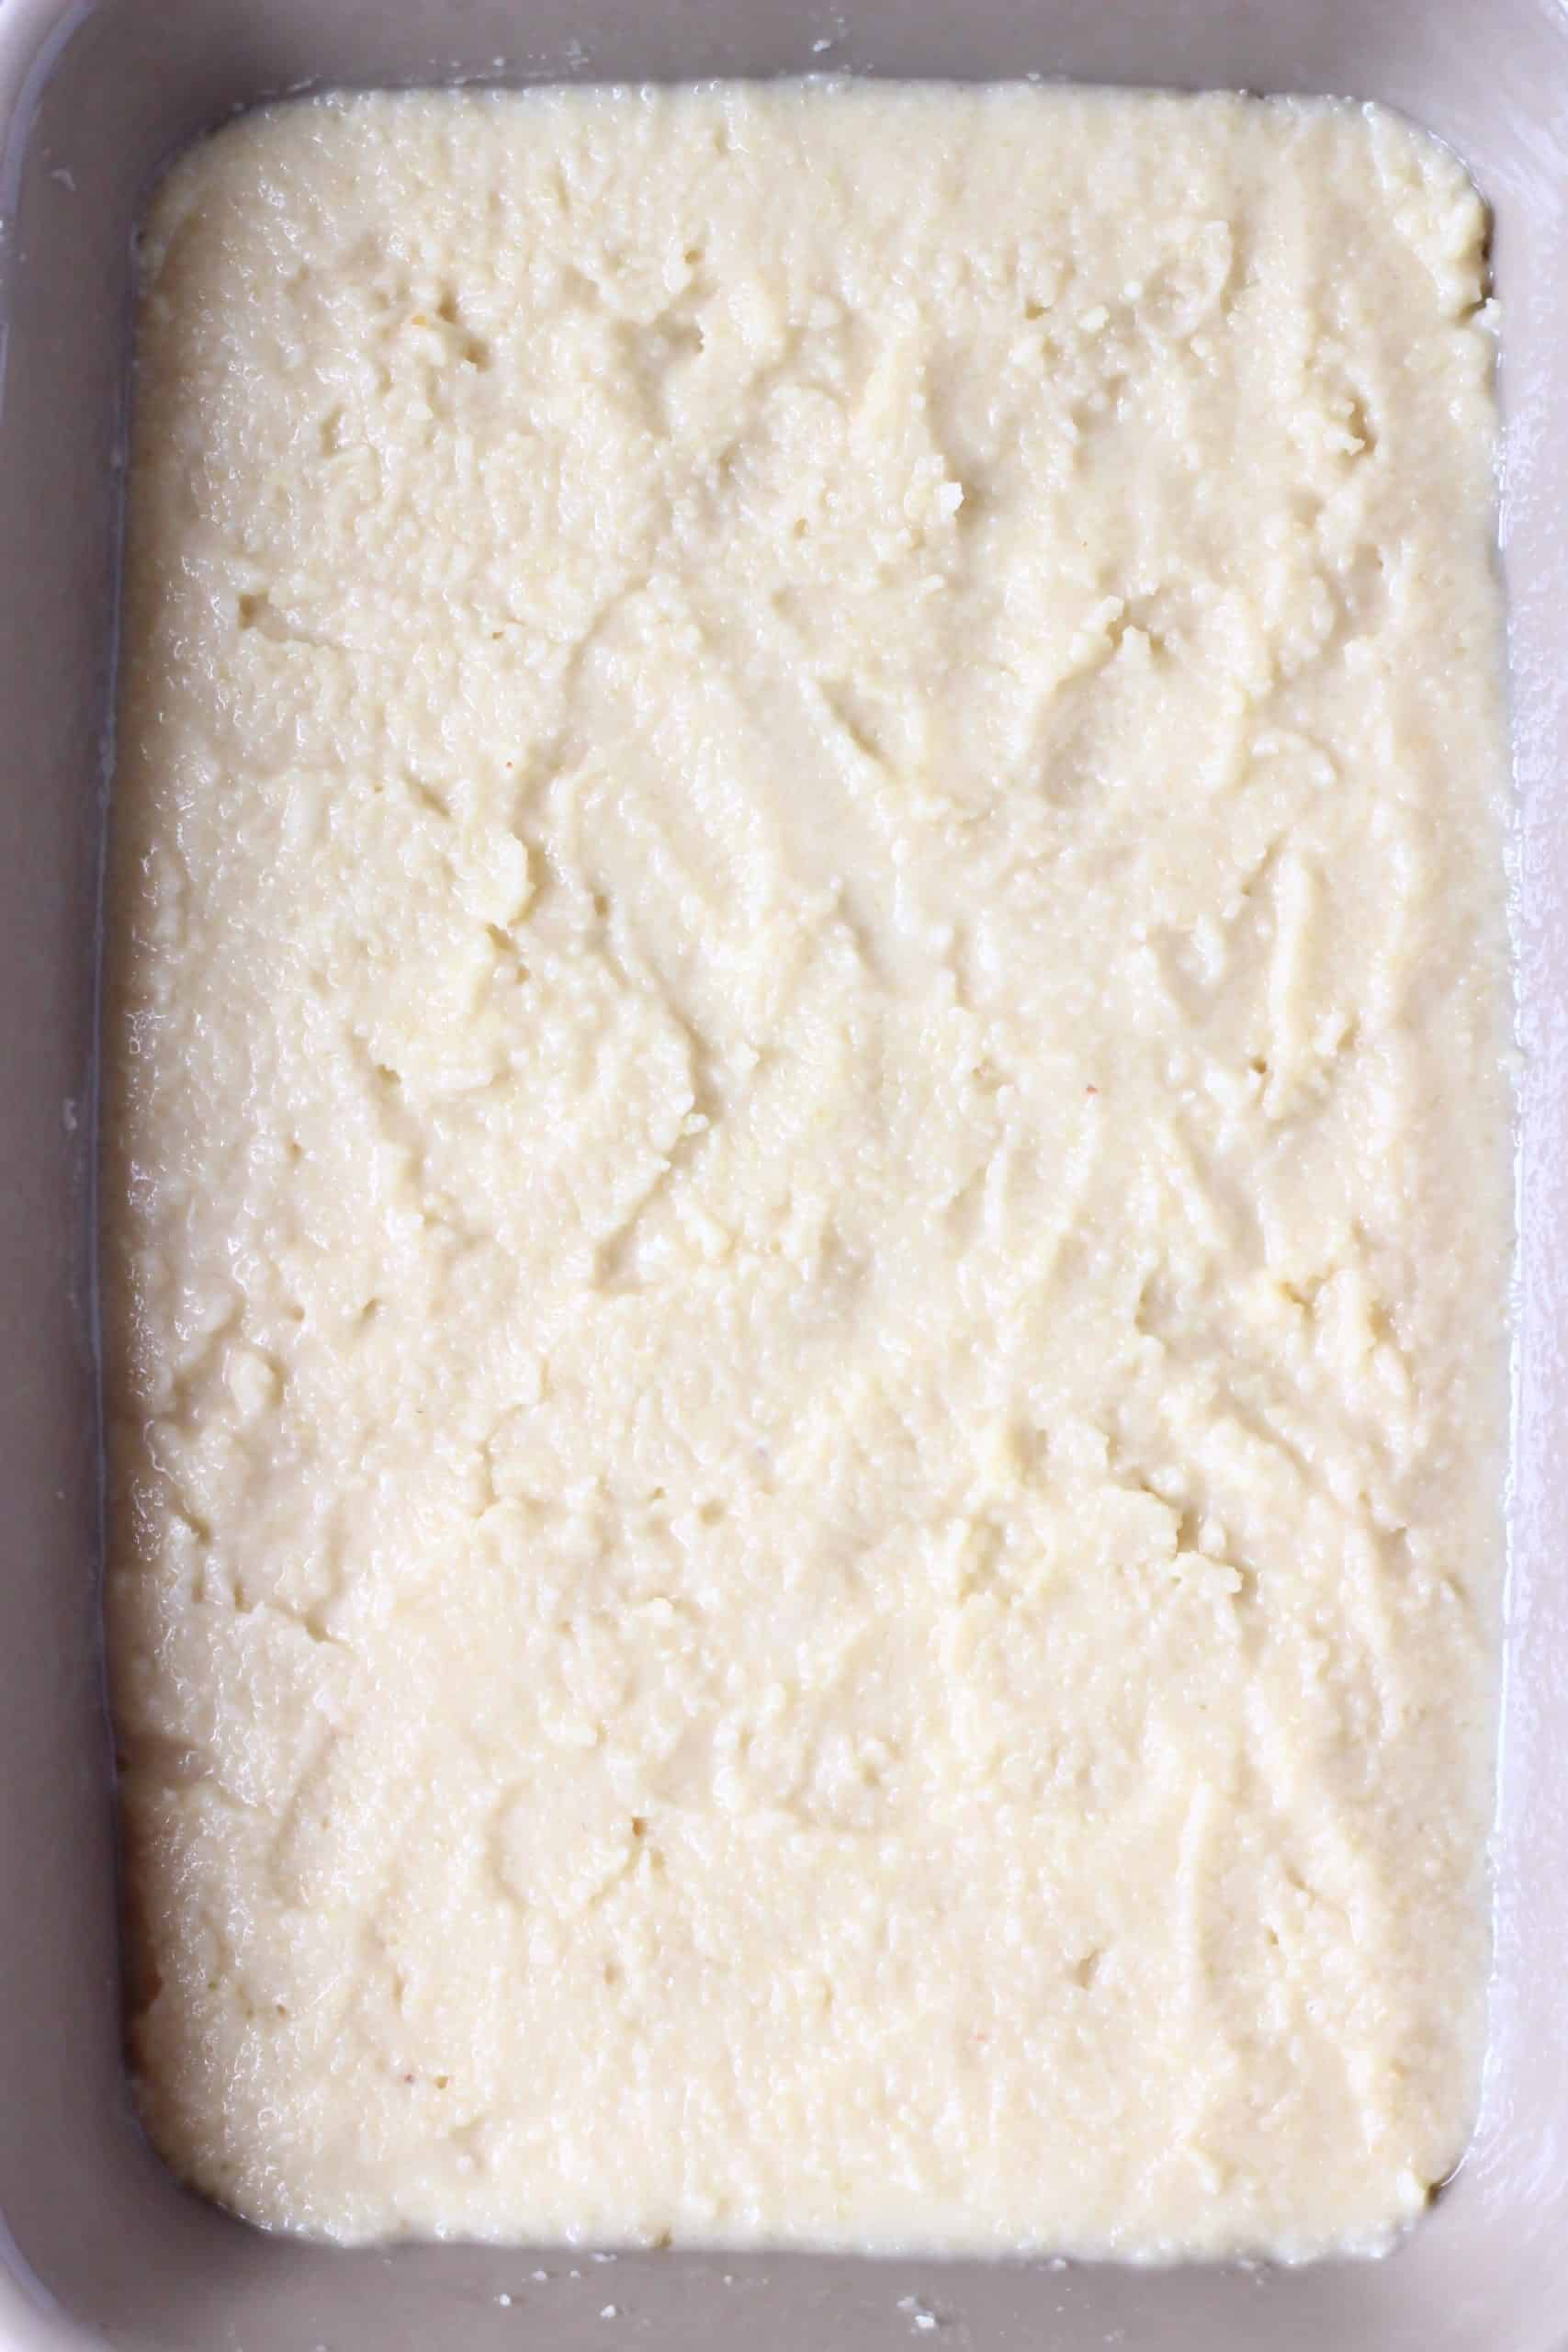 Raw vegan lemon pudding in a grey rectangular baking dish